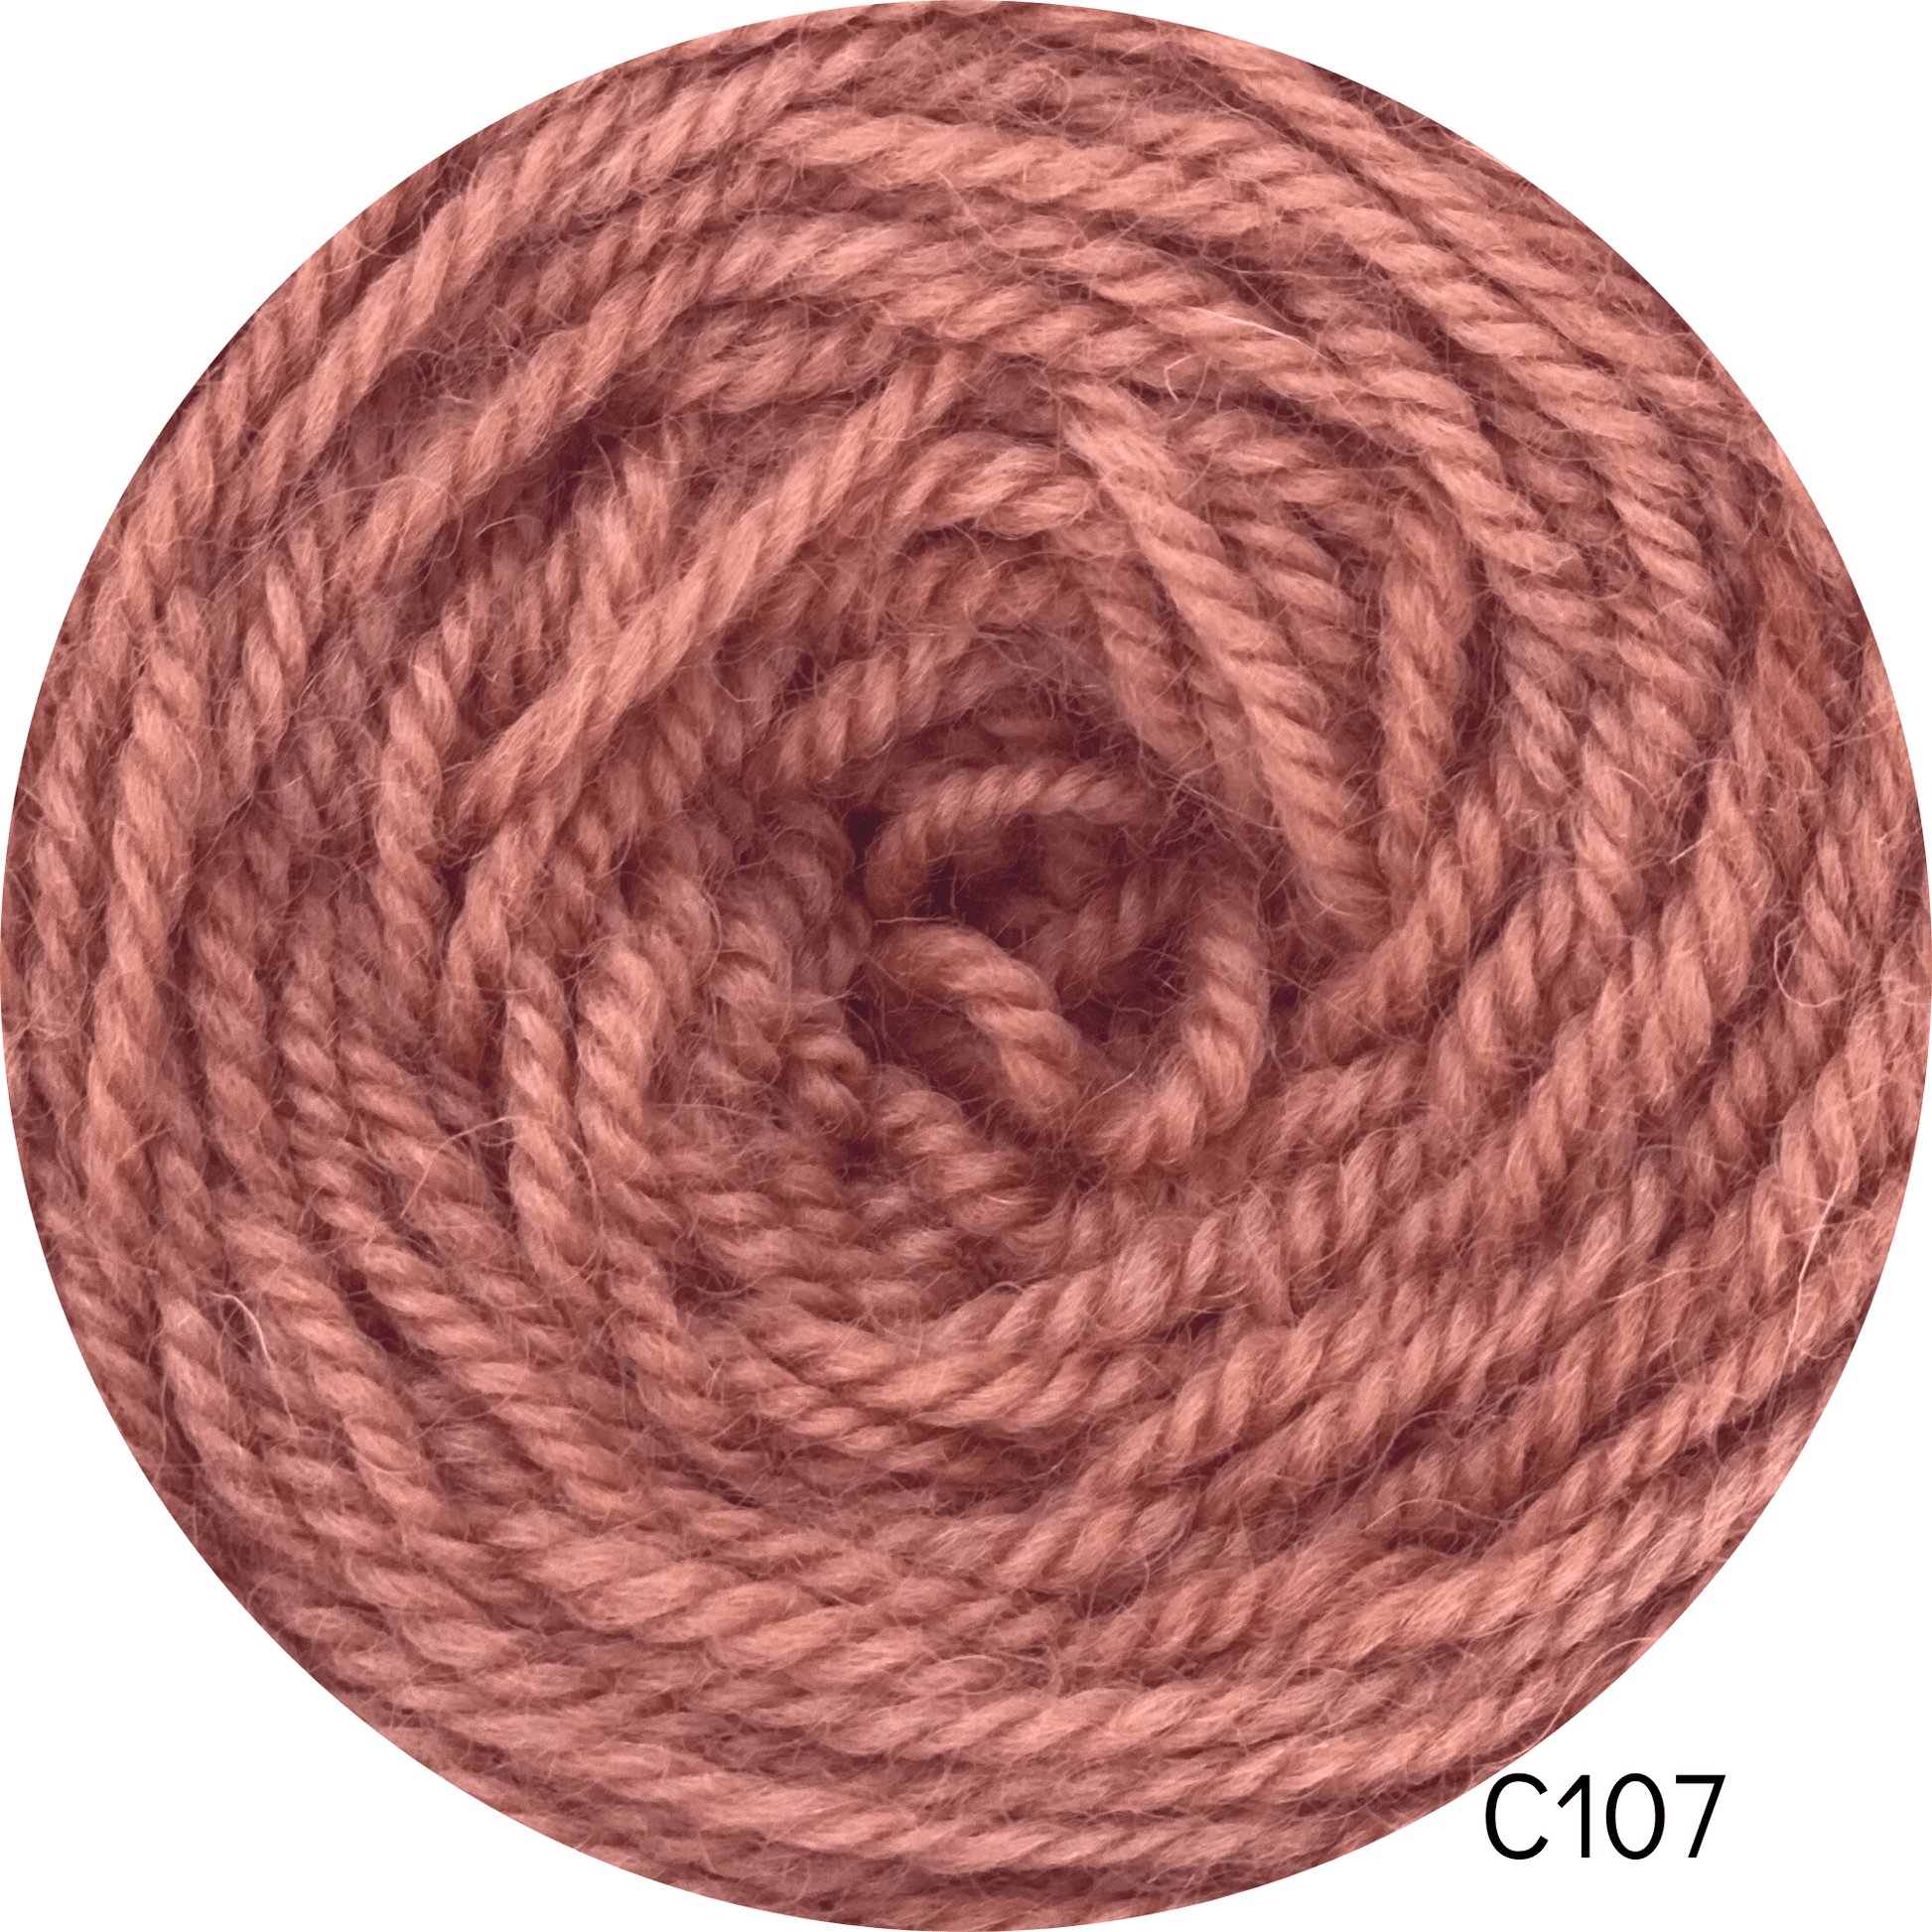 Coromina lana natural 20 grs C107 20GRS Atacama